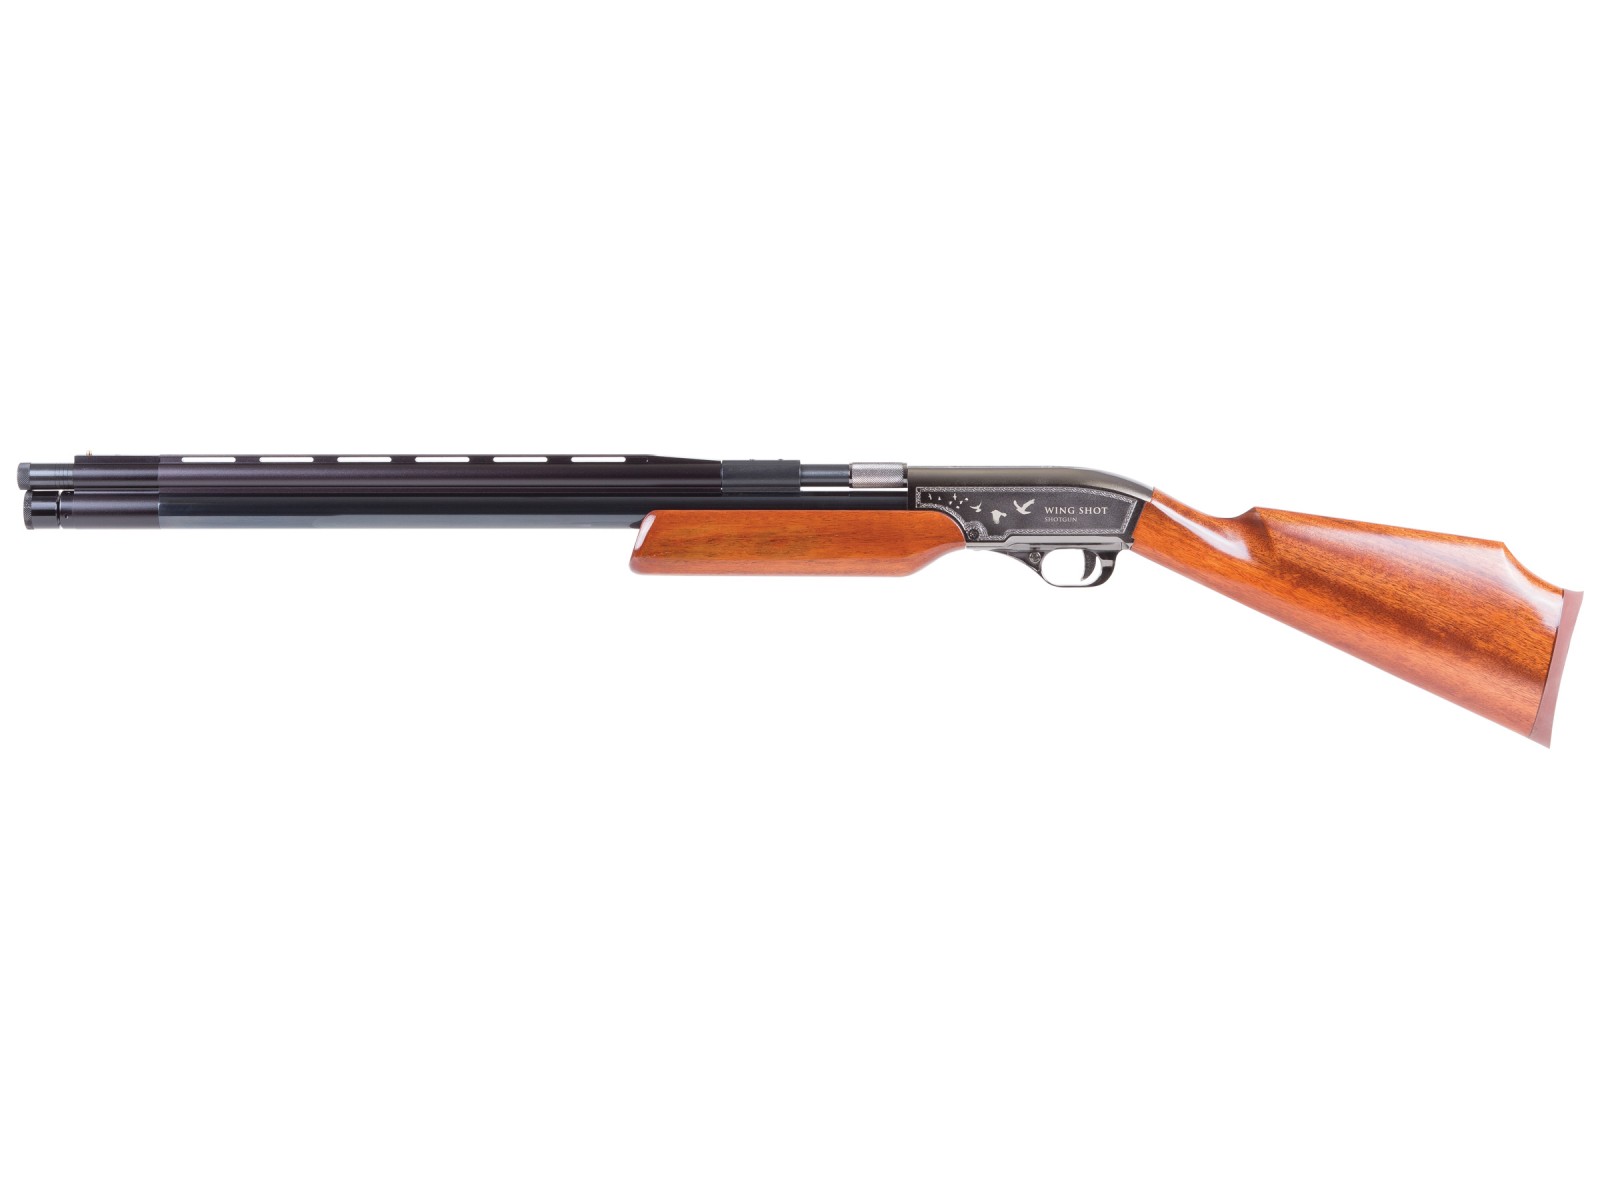 Number 8 Best Big Game Air Rifles Seneca Wing Shot II Shotgun